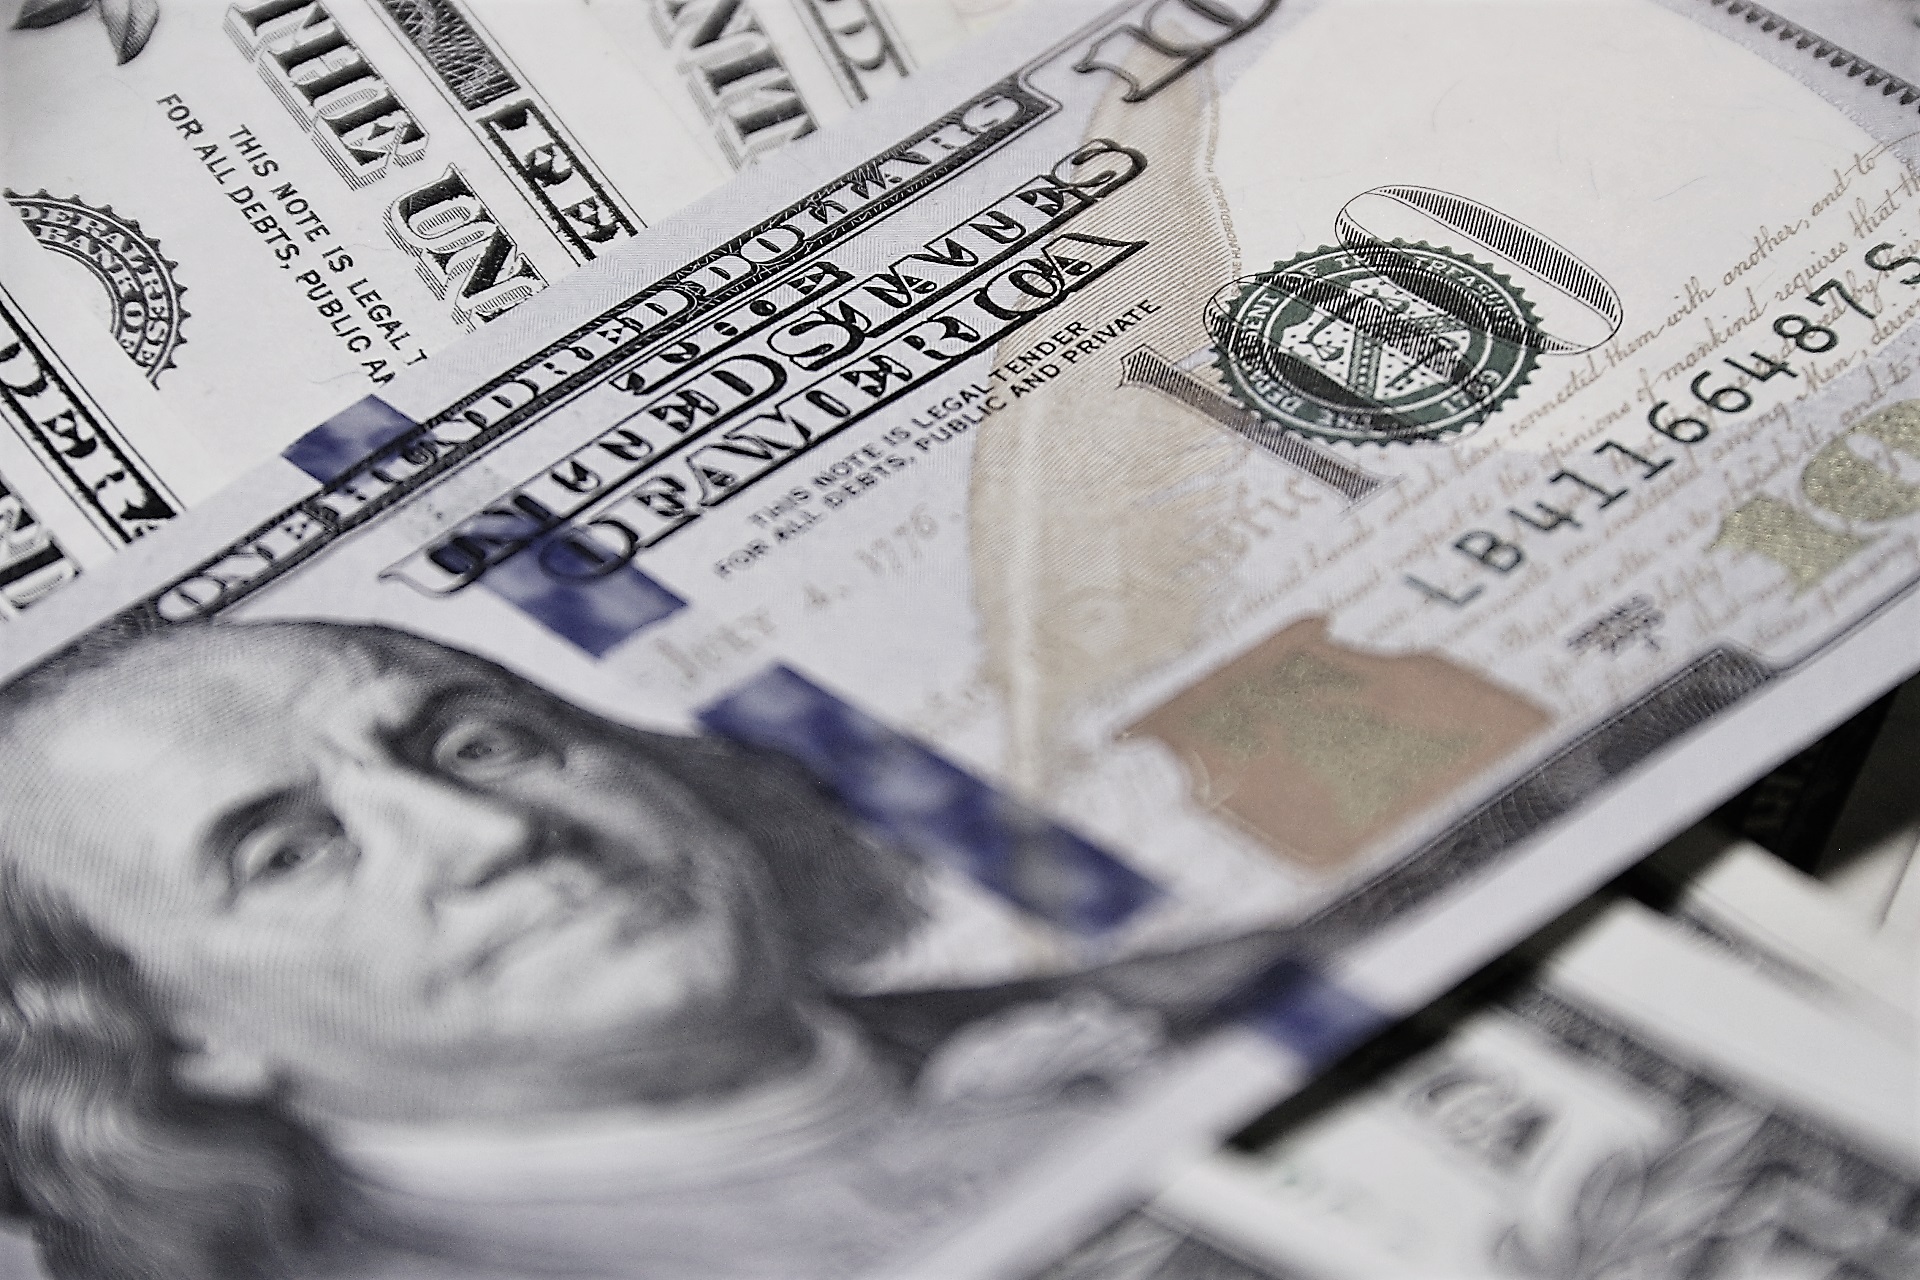 Hundred-dollar bills depict earnings on retirement savings.